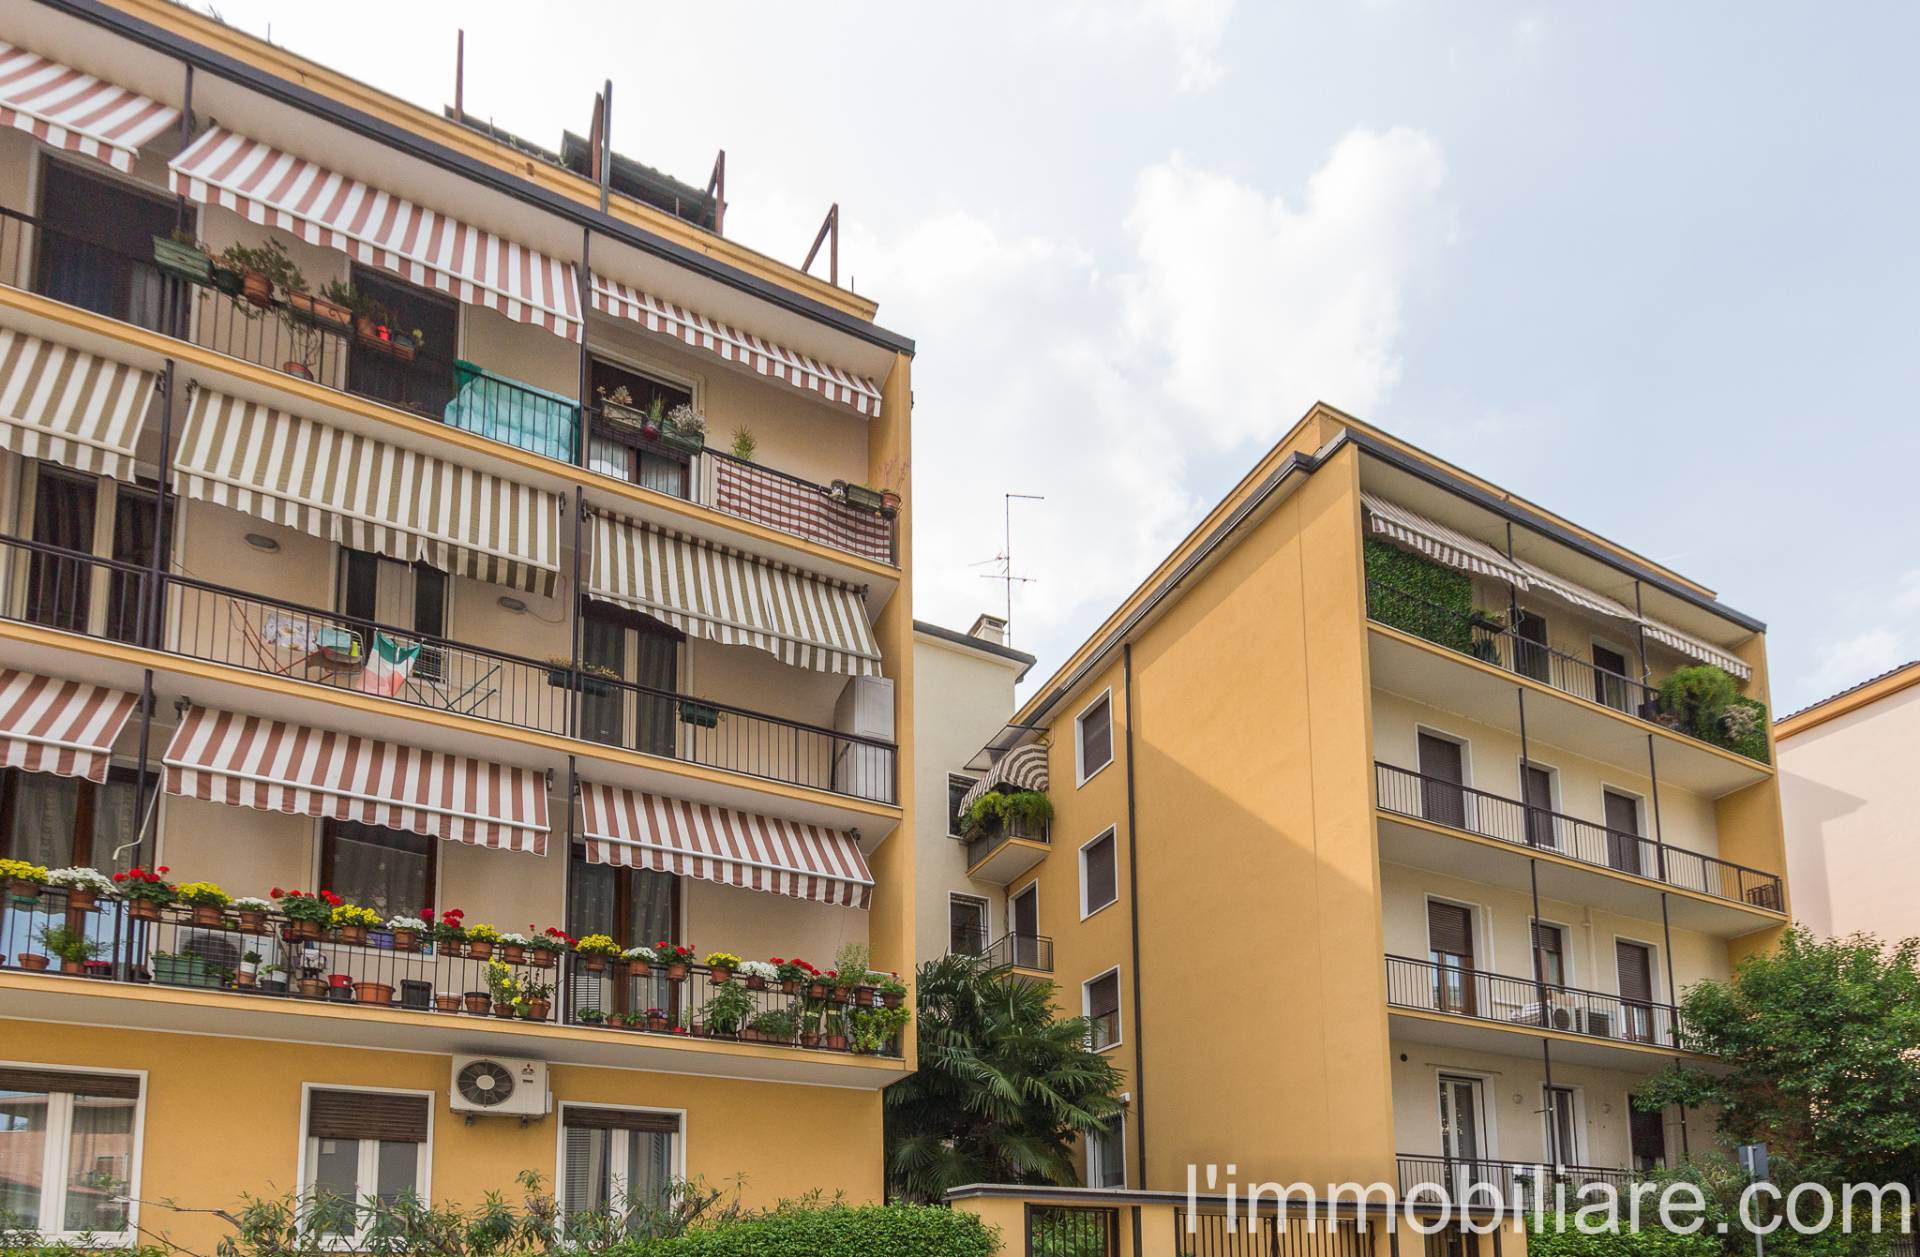 Appartamento in Vendita a Verona: 2 locali, 55 mq - Foto 22